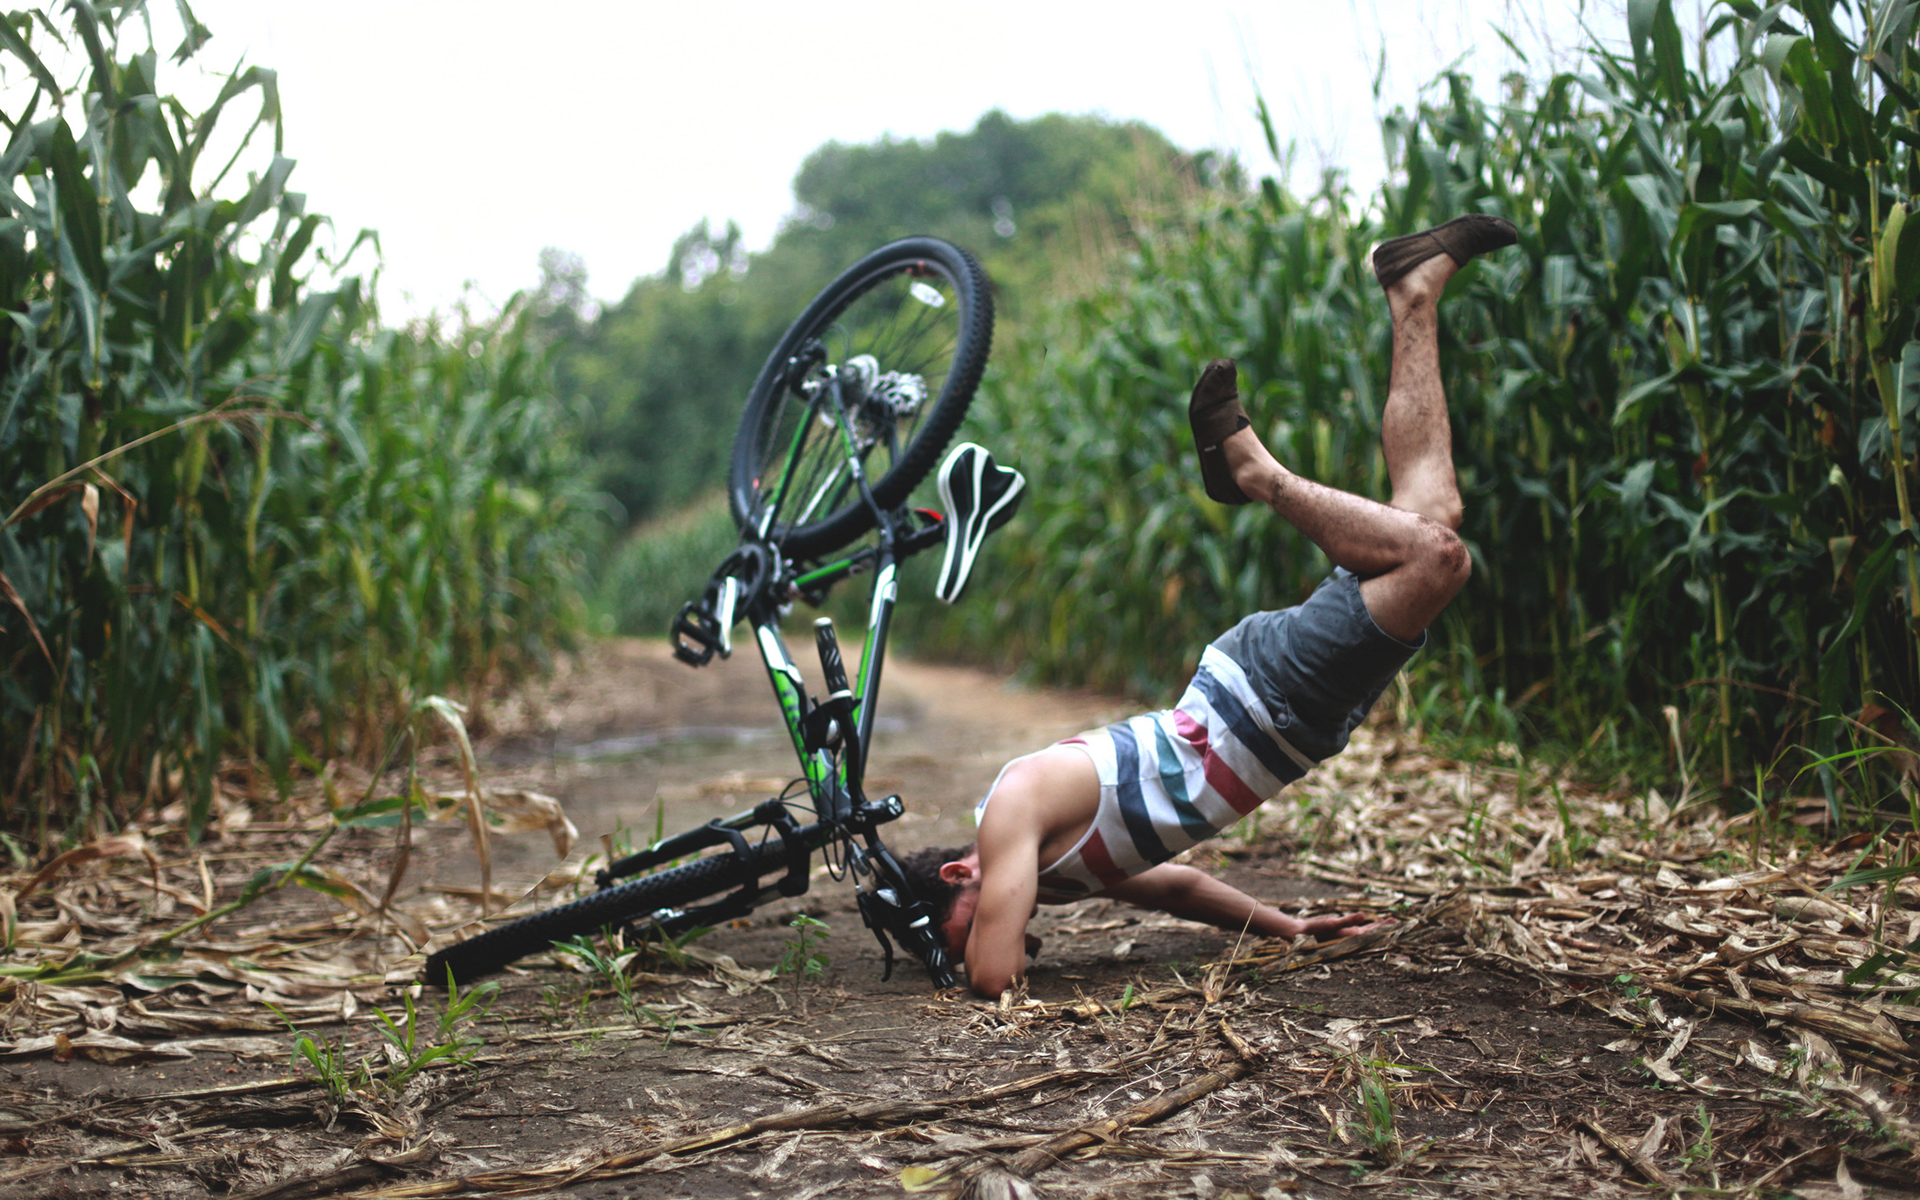 Fall failed. Человек падает с велосипеда. Смешные велосипеды.